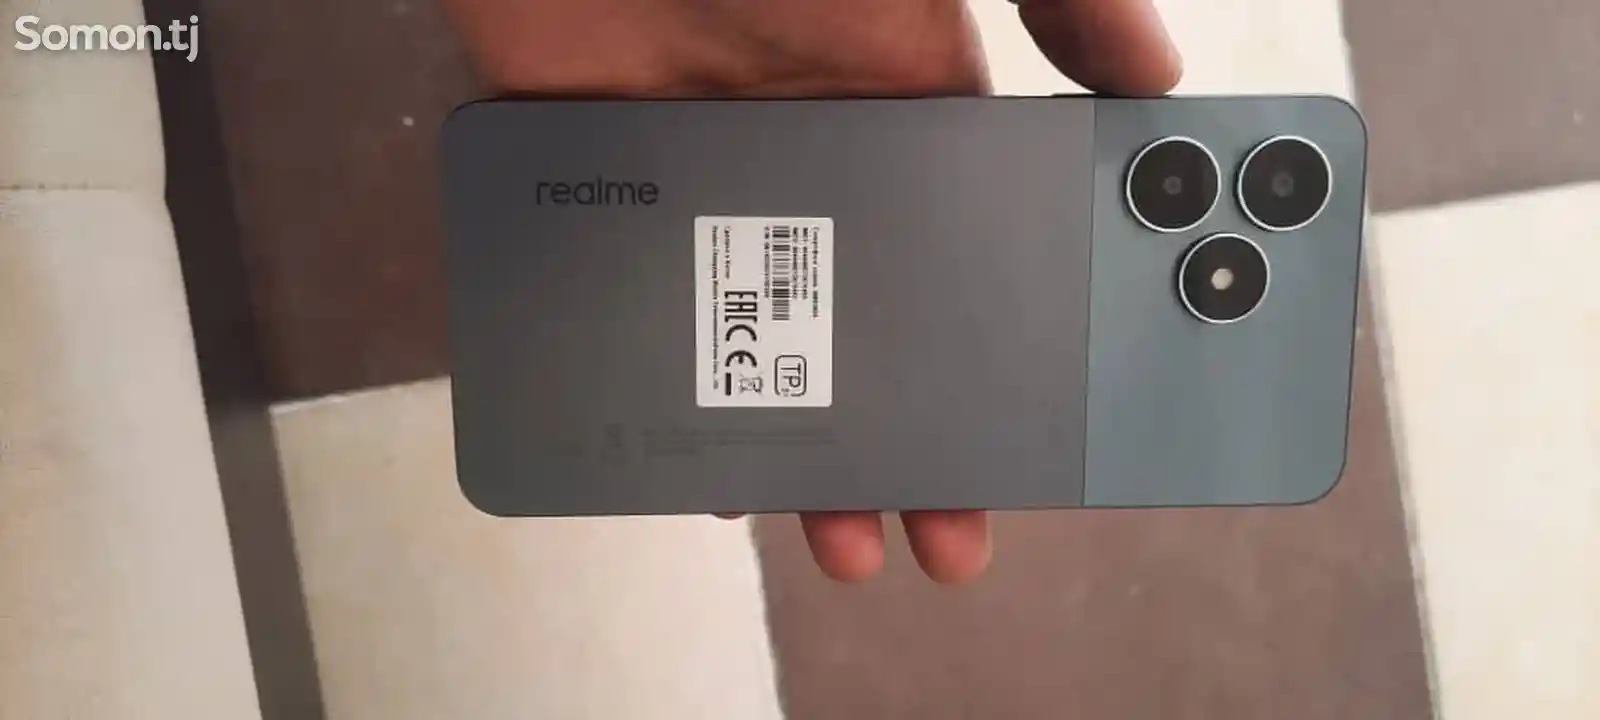 Телефон Realme-2